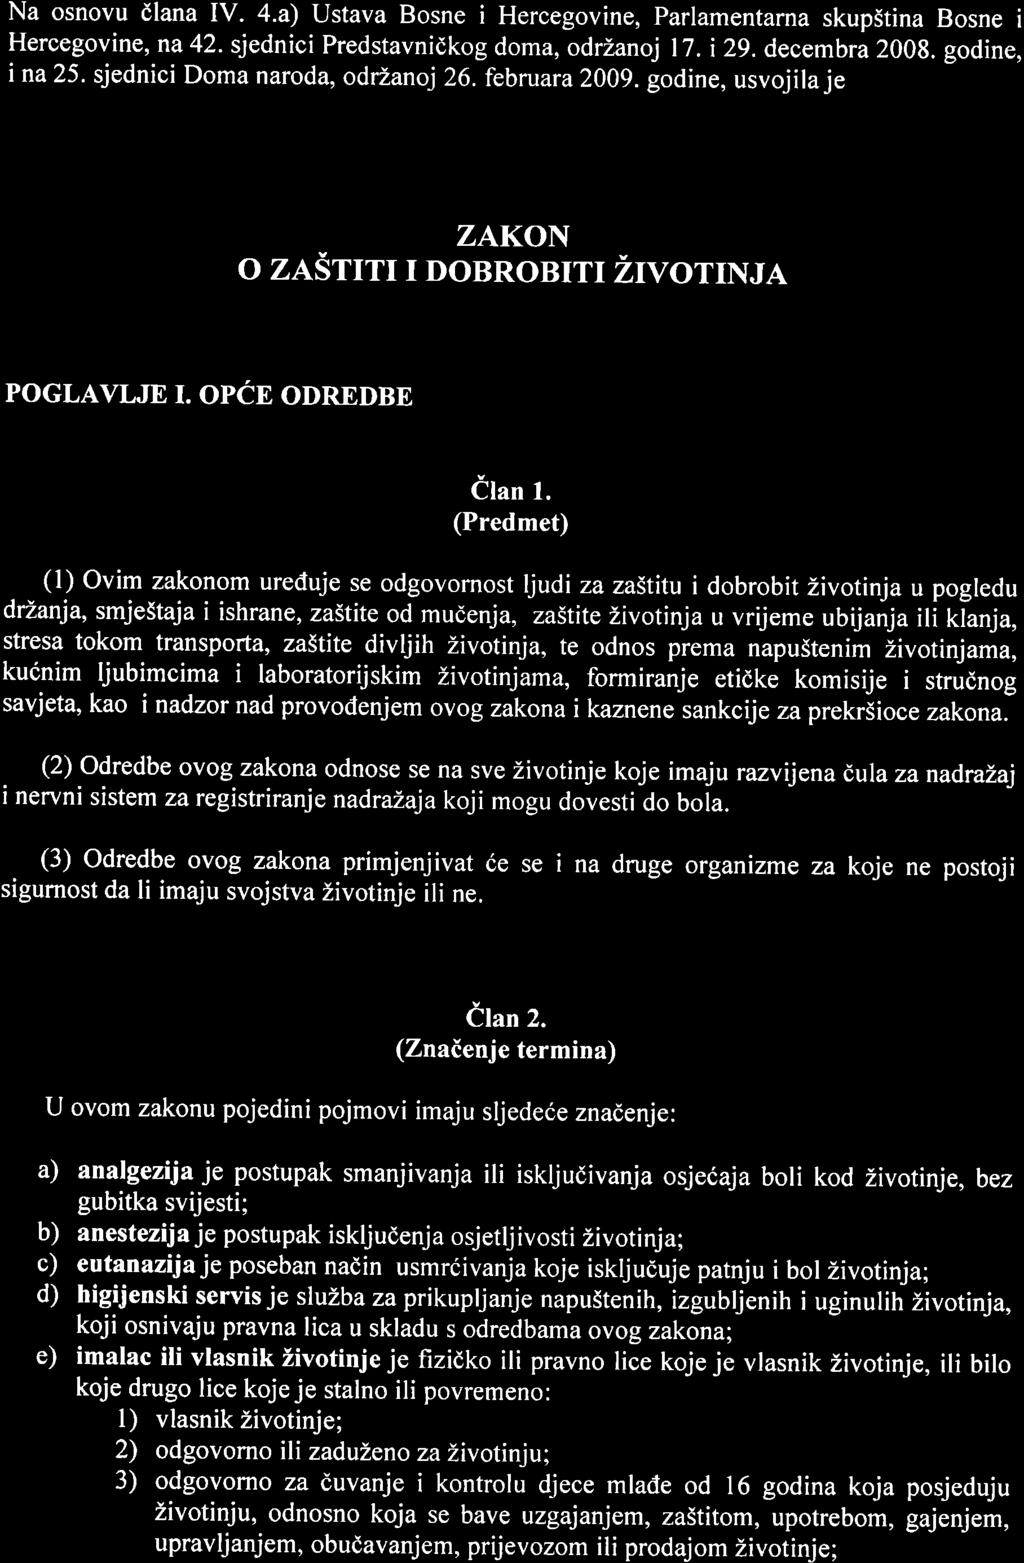 Na osnovu dlana IV. 4.a) Ustava Bosne i Hercegovine, Parlamentarna skupstina Bosne i Hercegovine, na 42. sjednici Predstavnidkog doma, odrzanoj l7. i 29. decembra 2008. godine, ina25.